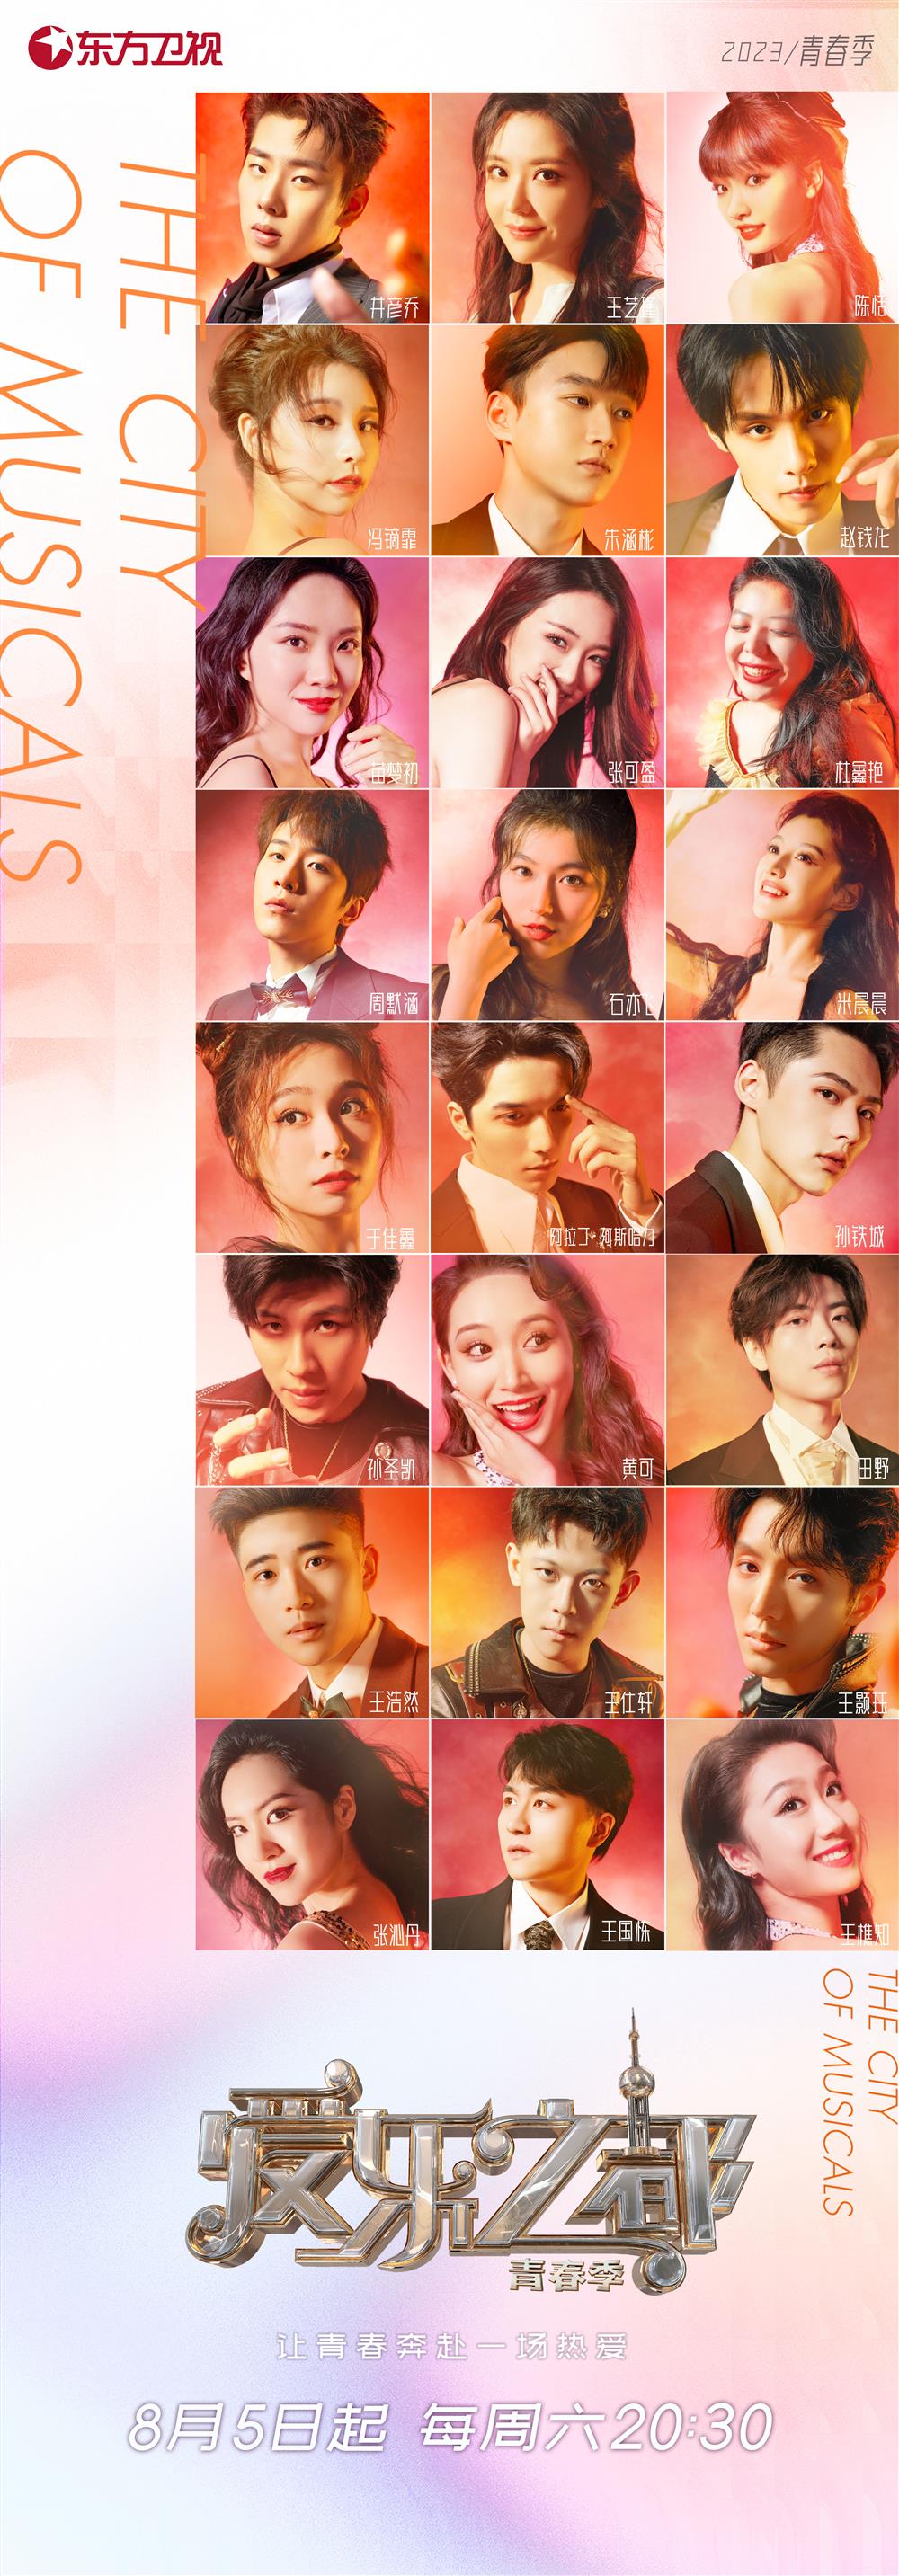 《爱乐之都·青春季》8月5日播出,聚焦中国音乐剧“新声力量”文化|音乐剧|爱乐之都·青春季